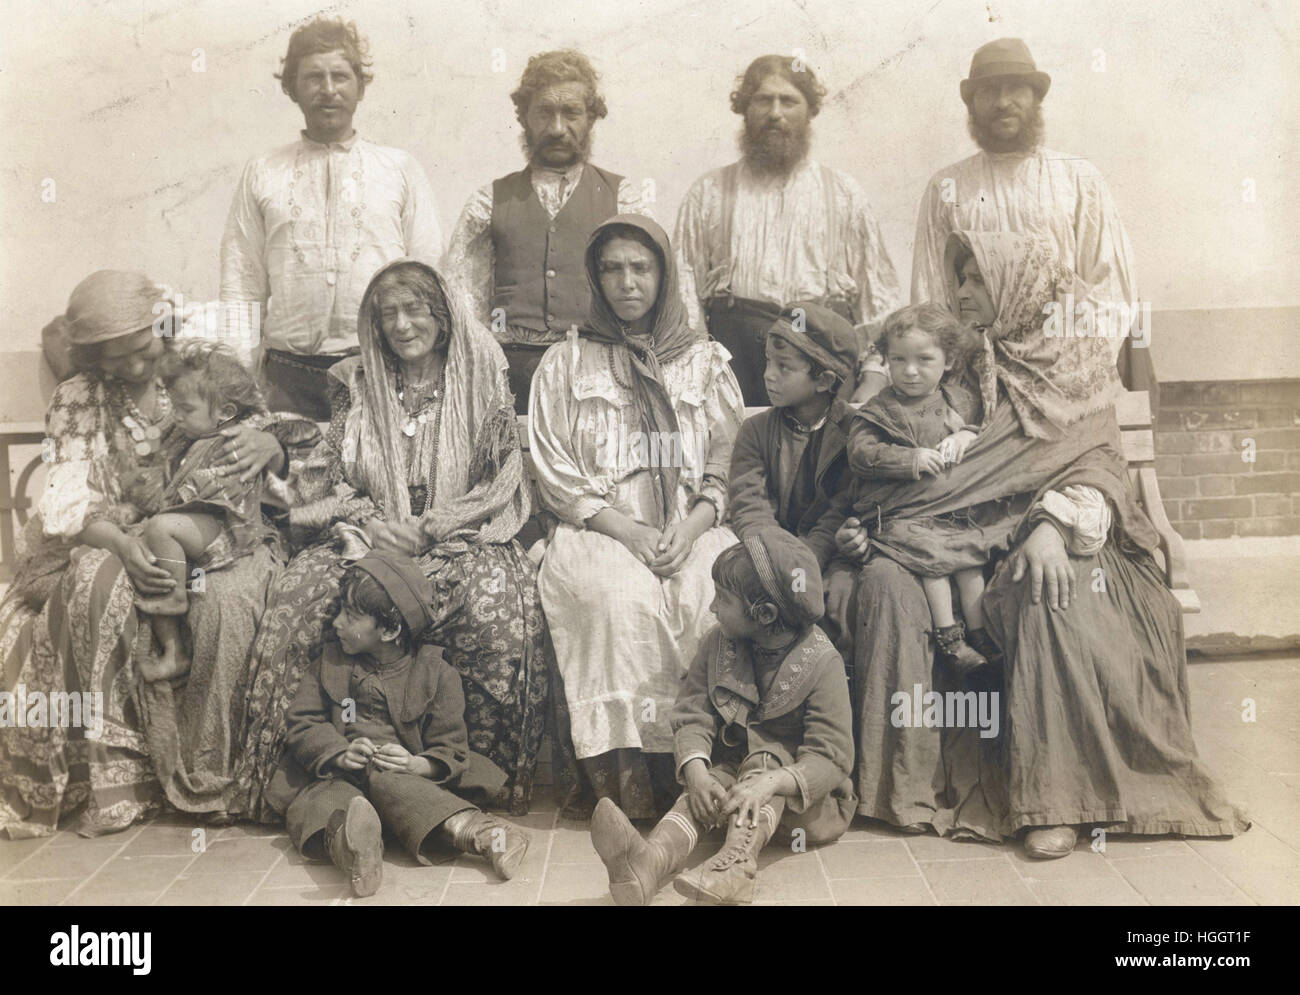 Gruppenfoto beschriftet "Ungarische Zigeuner, von denen alle deportiert wurden" in der New York Times, Sonntag, 12. Februar 1905 - Ellis Island Immigration Station 1902-1913 Stockfoto